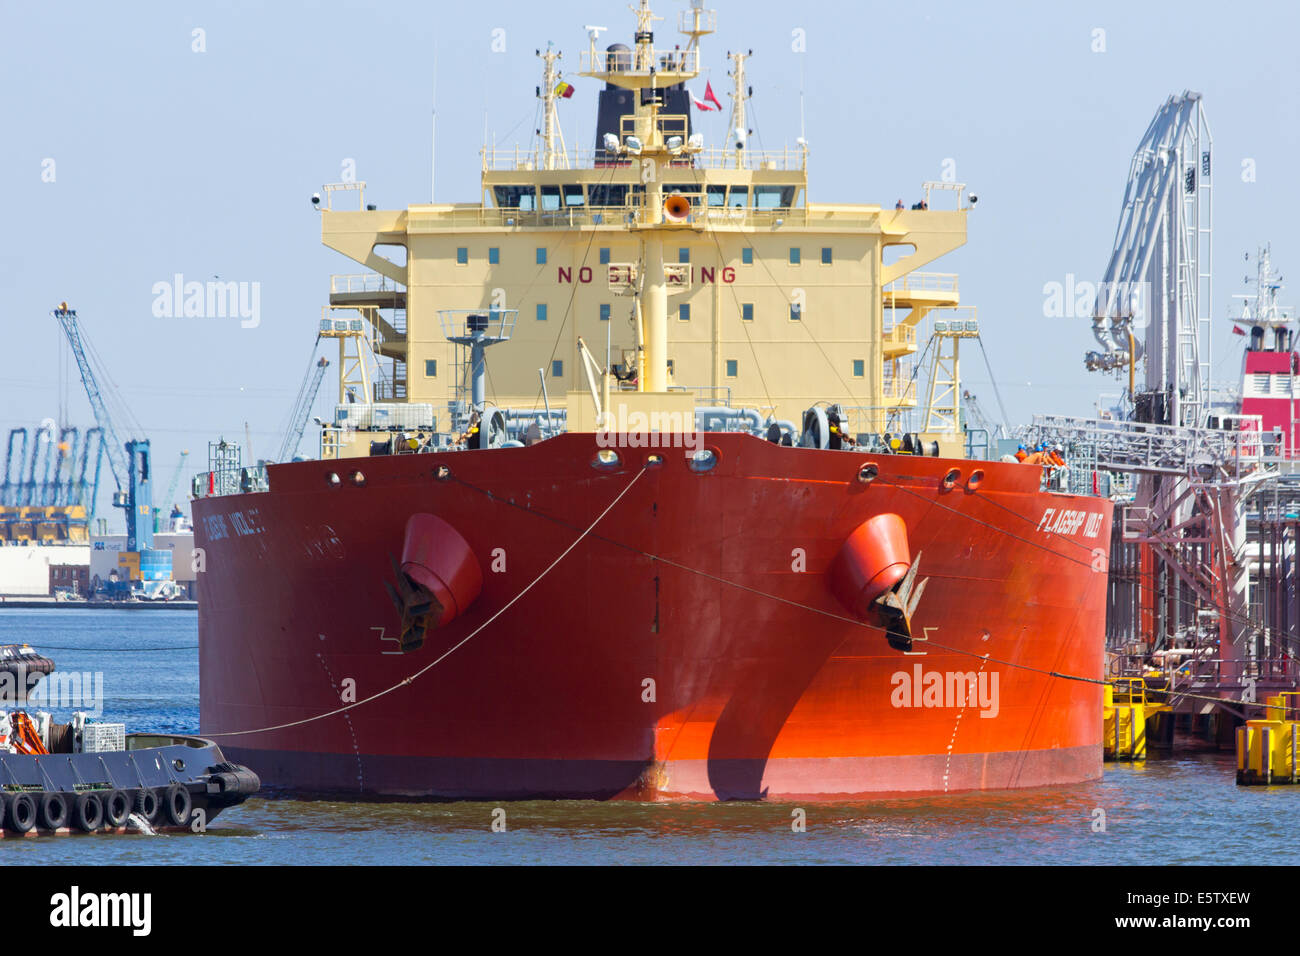 Oil tanker moored near an oil silo in Port of Antwerp July 9,2013 in Antwerp, Belgium. Stock Photo